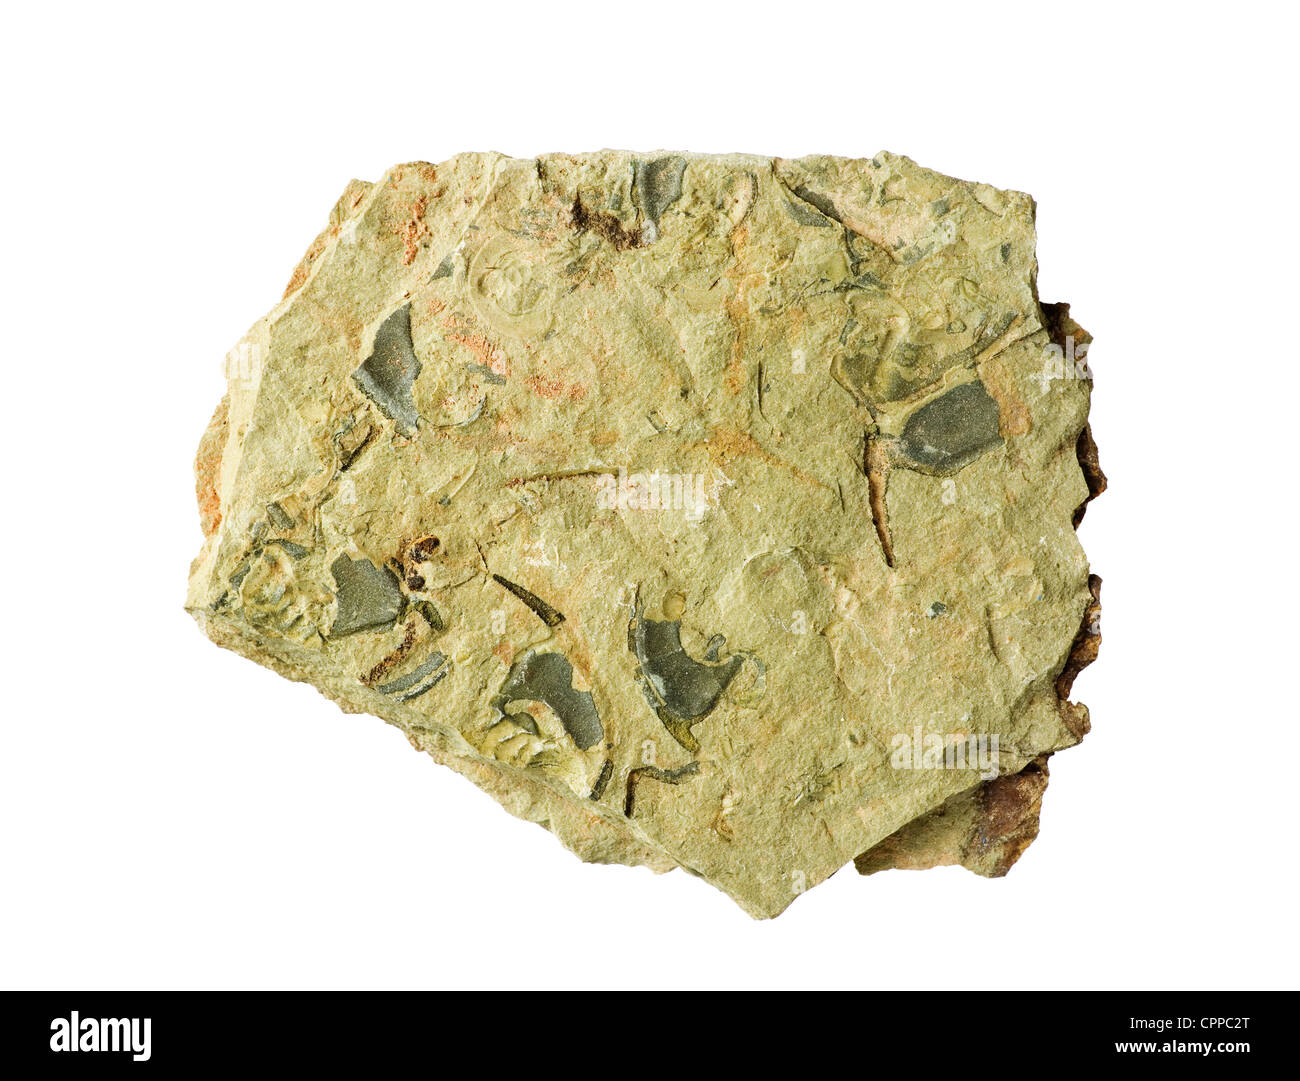 Schiste cambrien avec Ollenelid les fossiles de trilobites dans il isolé sur fond blanc Banque D'Images